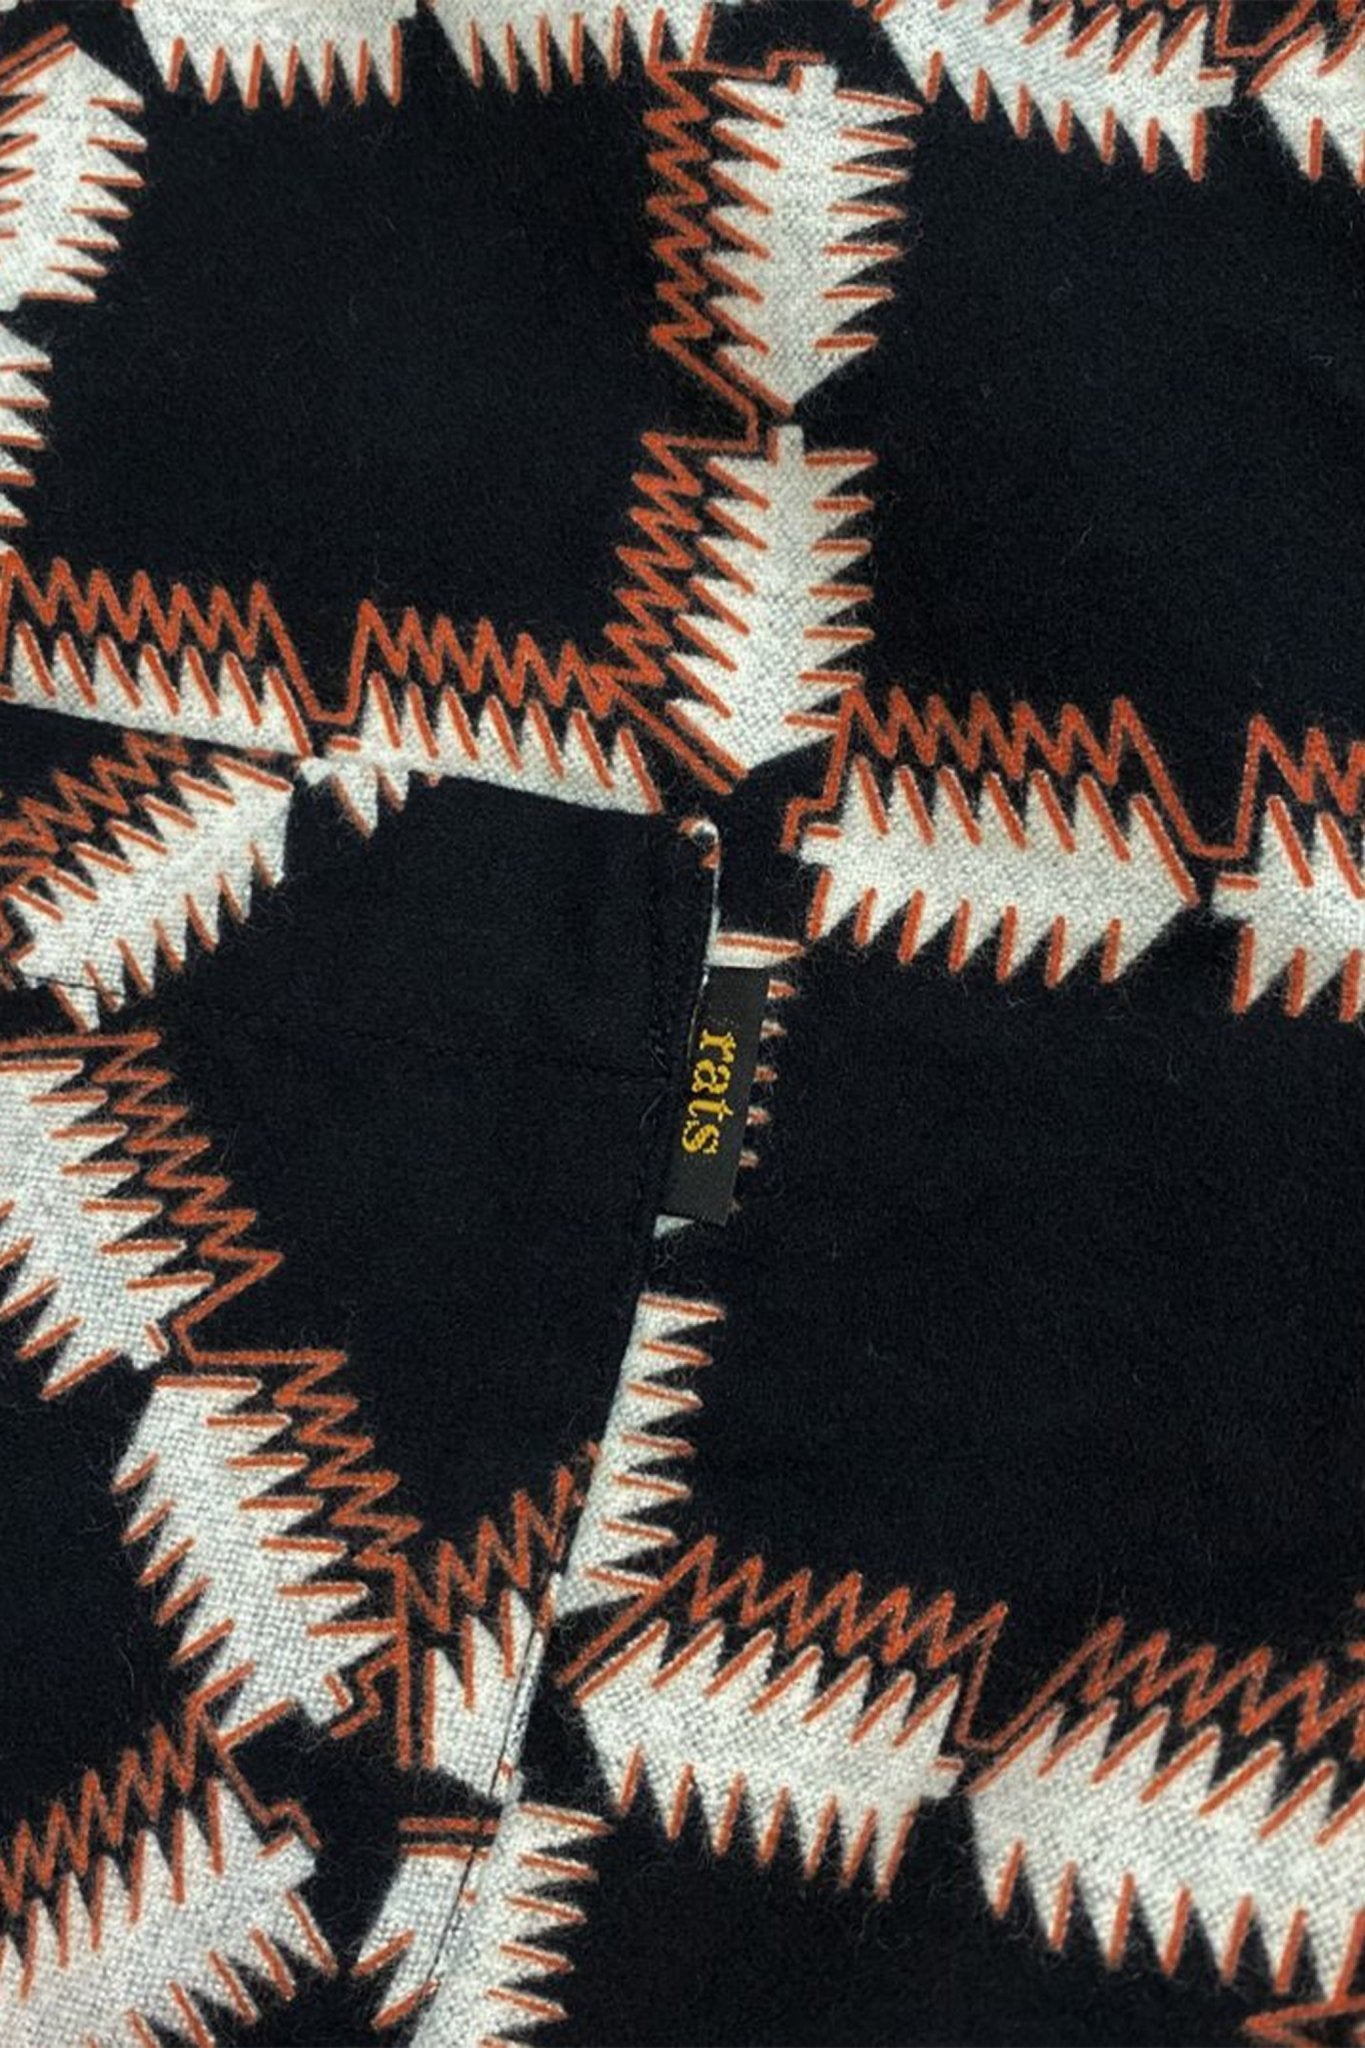 Rats Native Print Flannel Shirt - Black / Orange -Rats - URAHARA